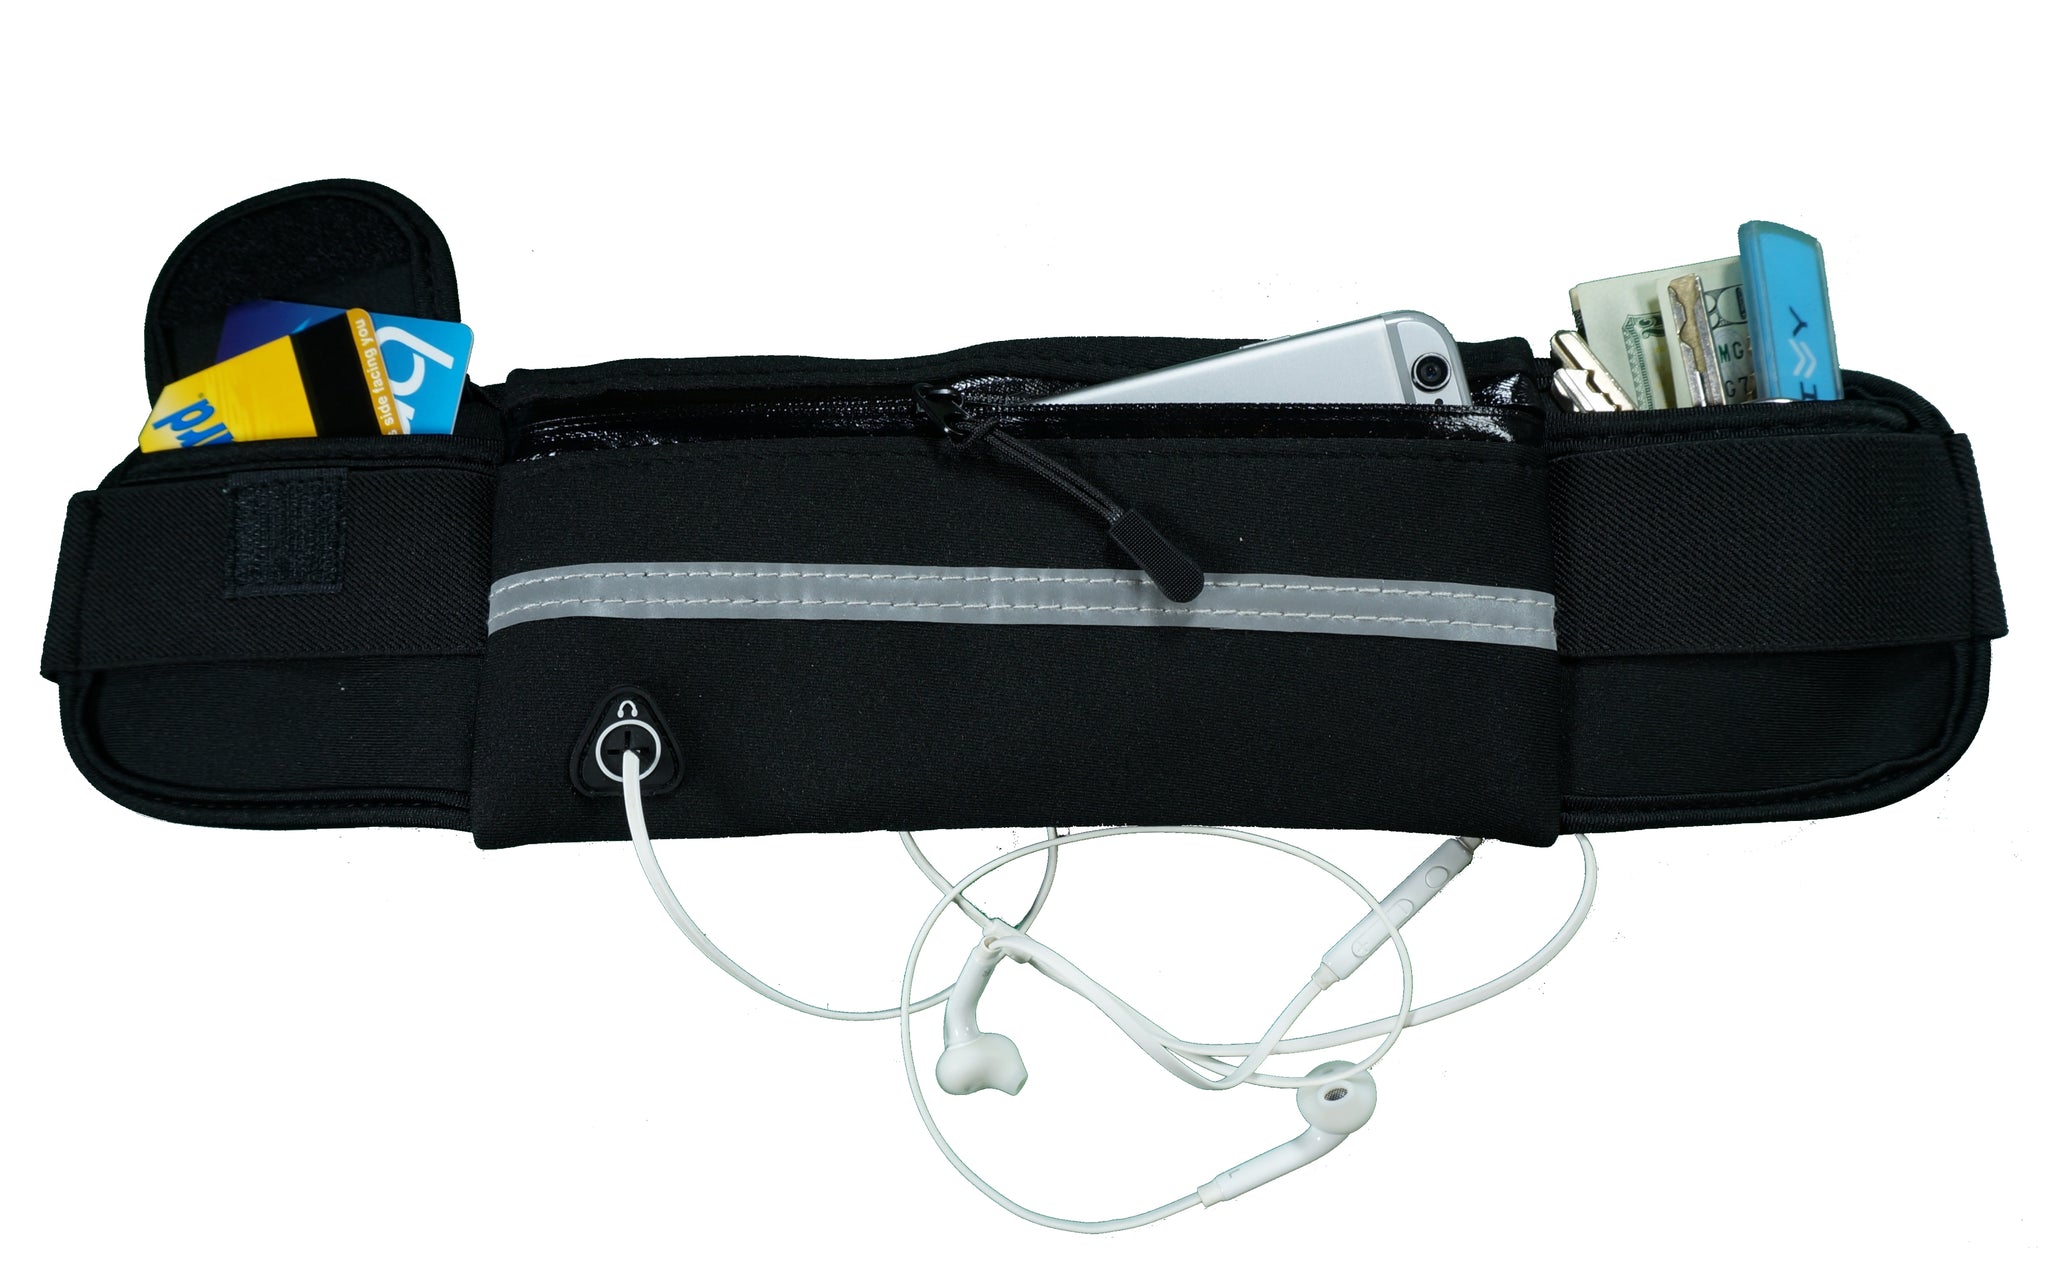 dimok Running Belt Waist Pack Waterproof Phone Case - Runners Belt